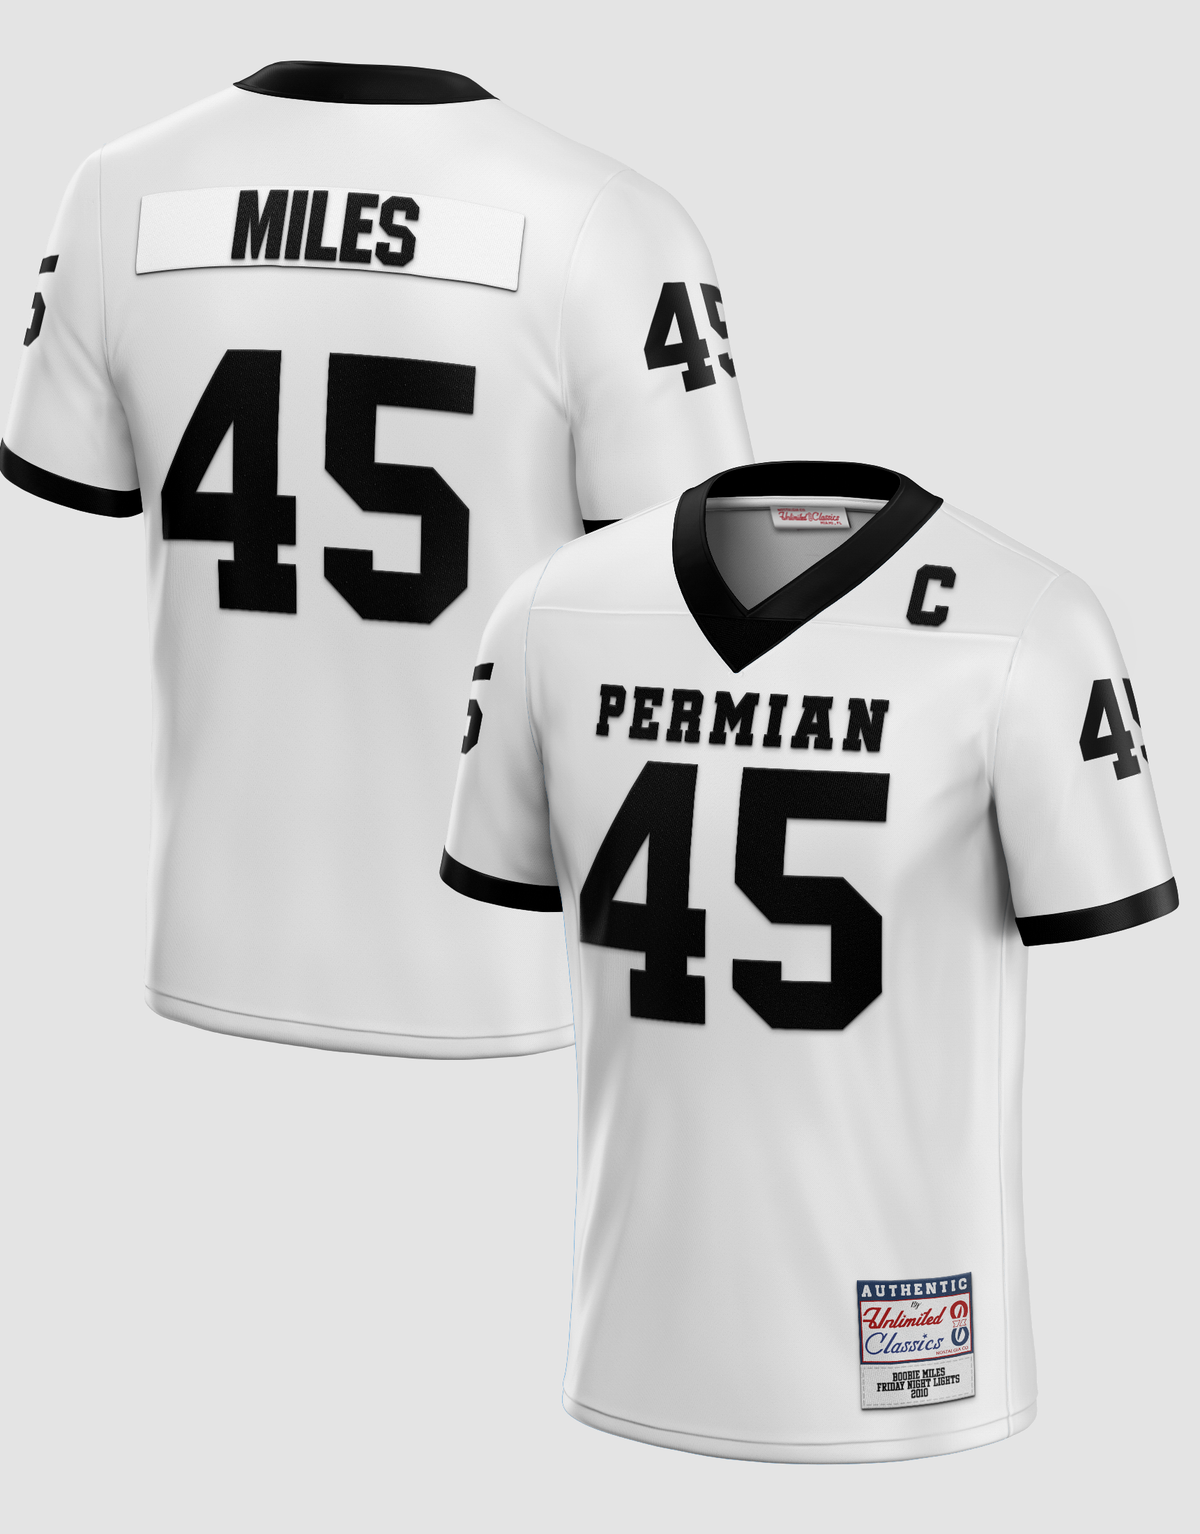 Boobie Miles #45 Permian White Football Jersey